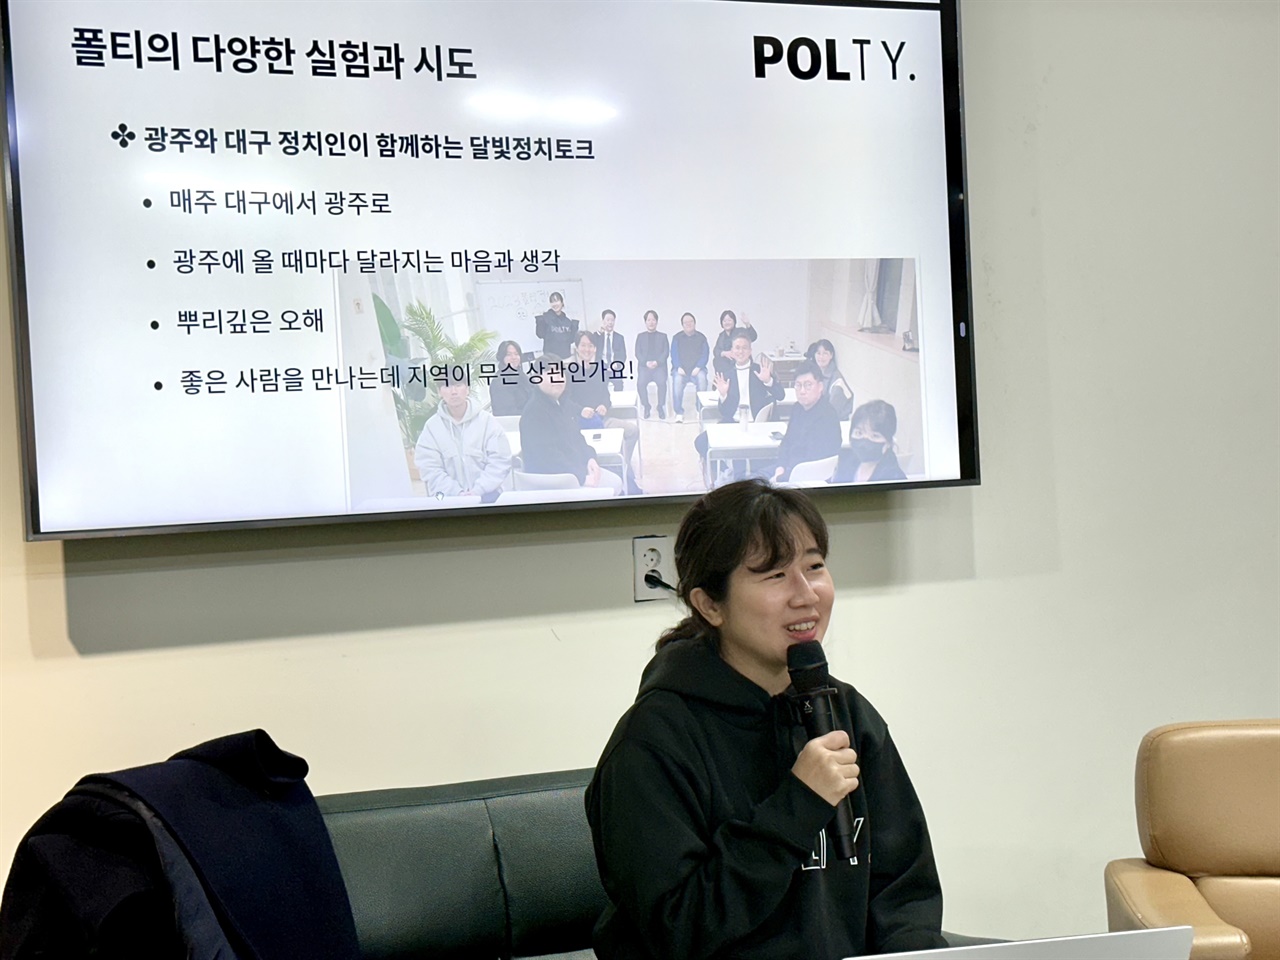 7일 광주청년센터에서 "폴티" 최하예 대표가 강연을 진행하고 있다.